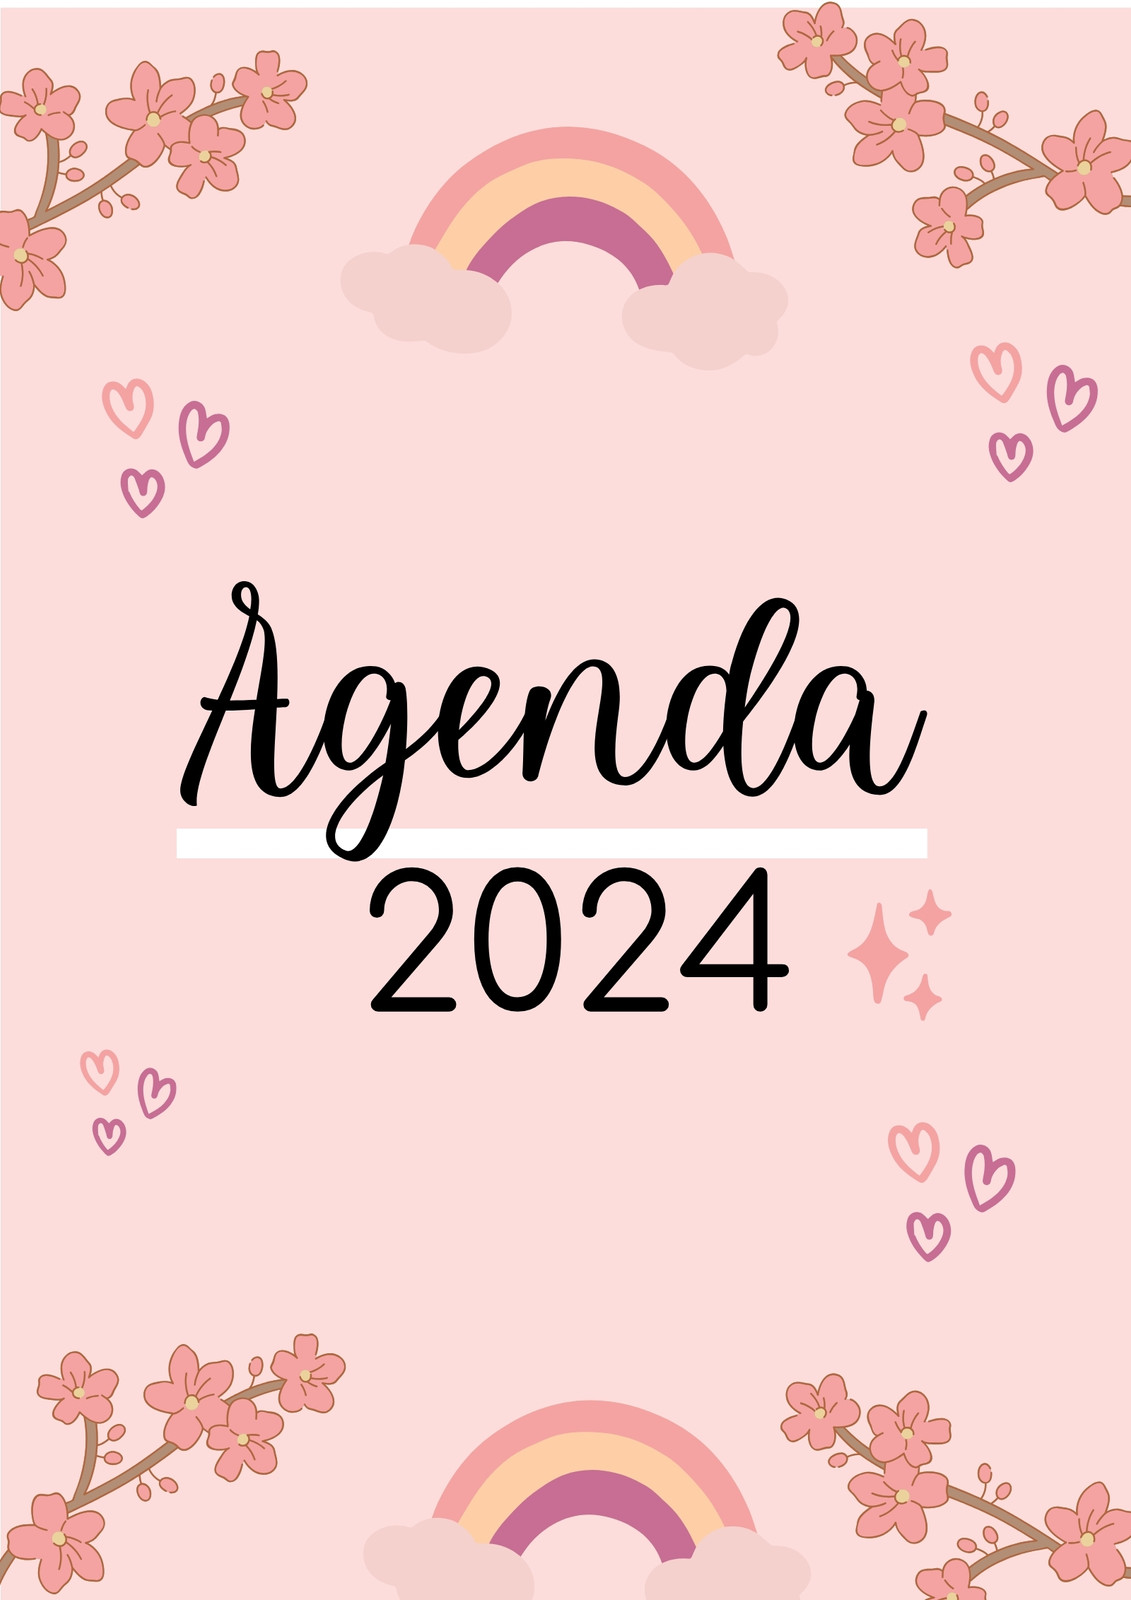 Agenda 2024 estilo pizarra Cree, crea, crece